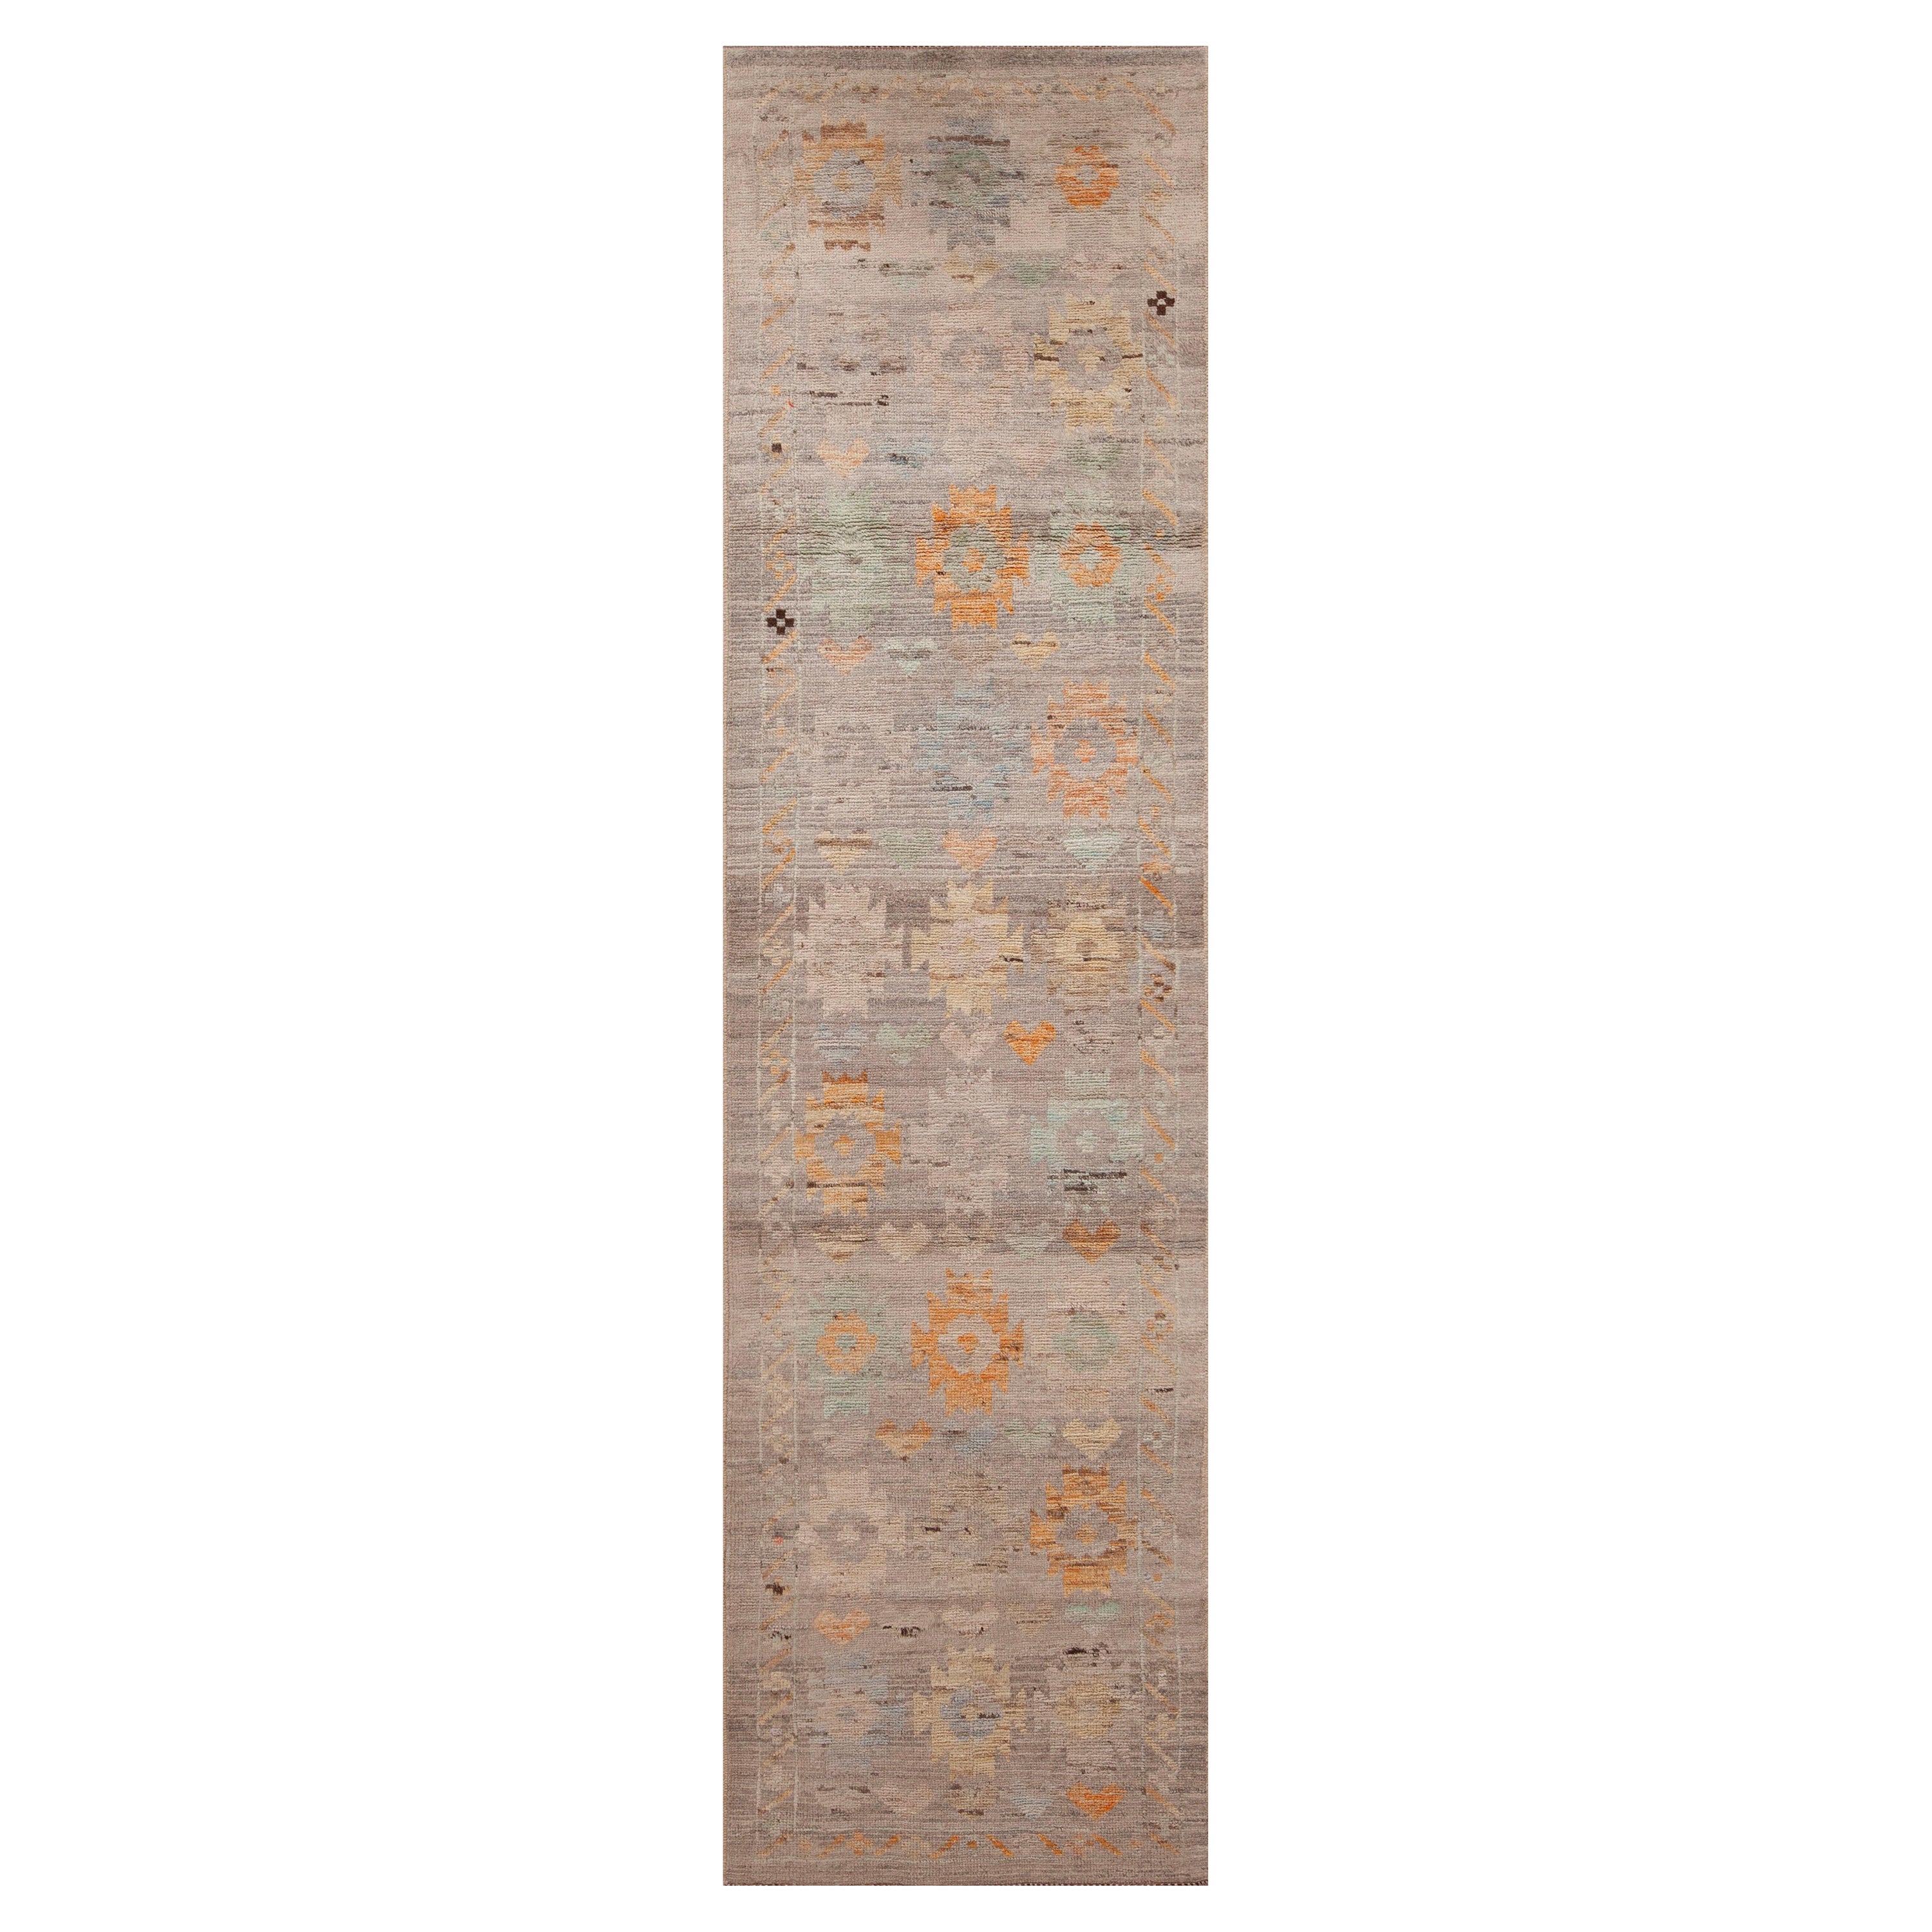 Collection Nazmiyal, tapis de course rustique géométrique, gris neutre et tribal, 2'8" x 10'2"